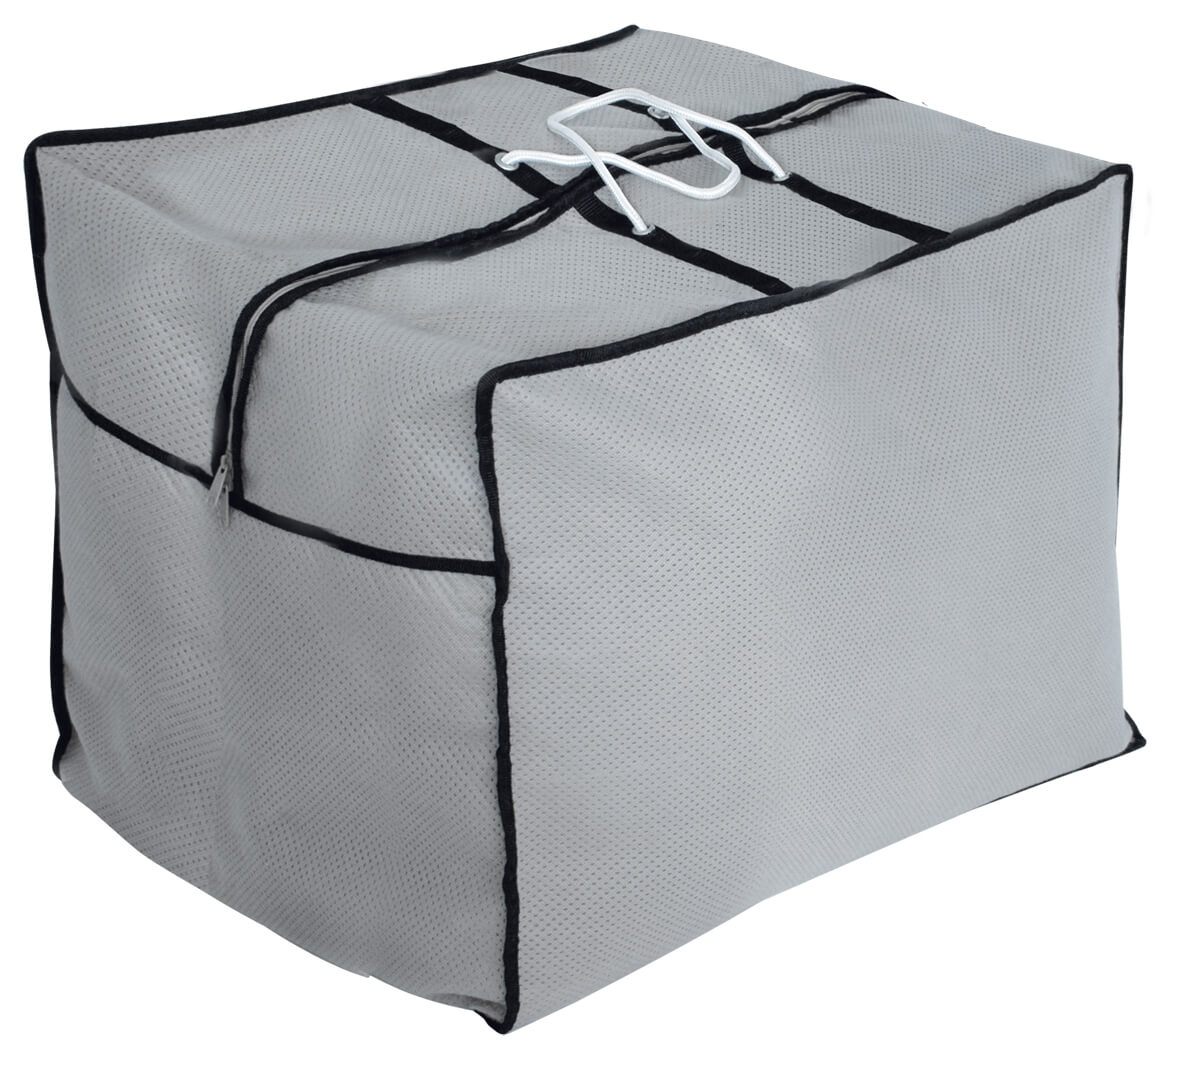 Cushion bag for patio furniture cushions 90 x 90 H: 60 cm